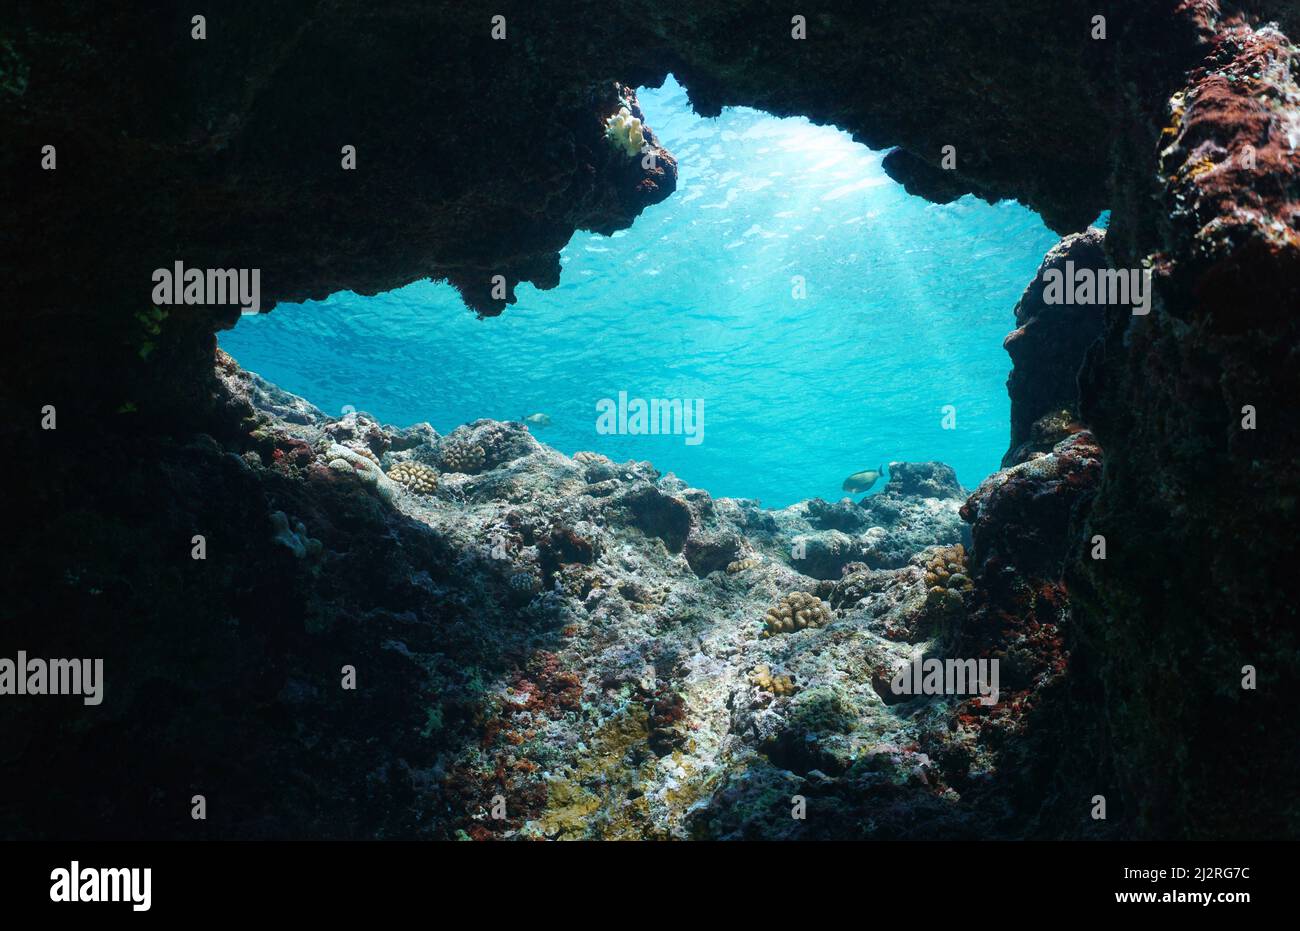 Salida submarina de la cueva en el océano con la luz del sol a través de la superficie del agua, Pacífico sur, Polinesia Foto de stock